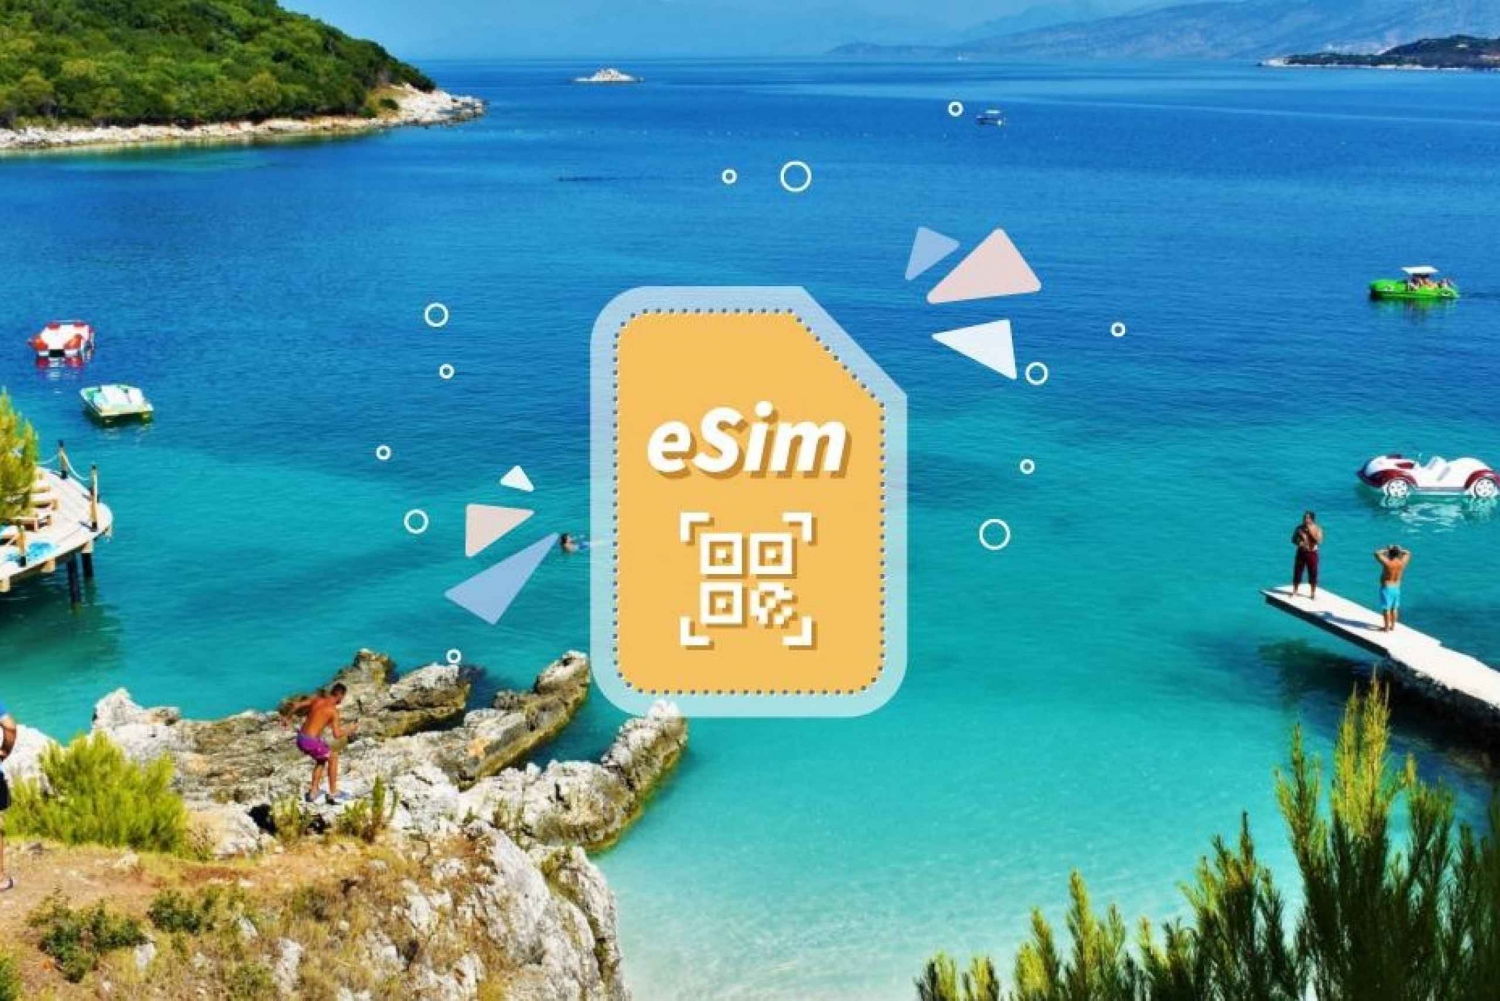 Albania/Europa: pakiet danych mobilnych eSim